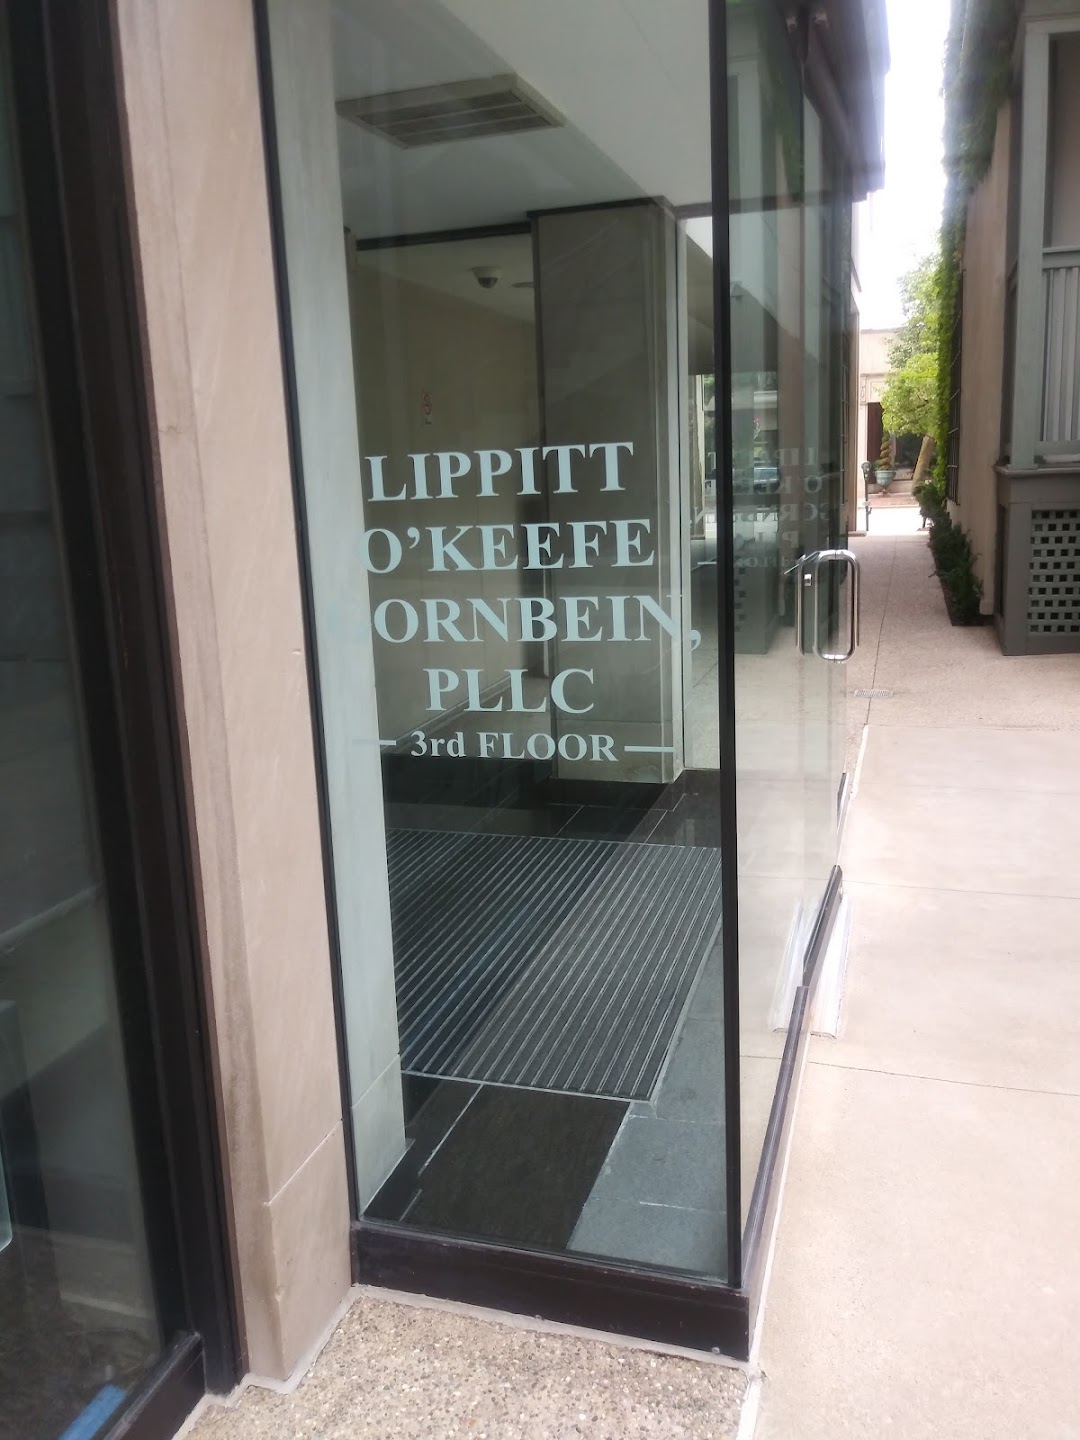 Lippitt OKeefe, PLLC